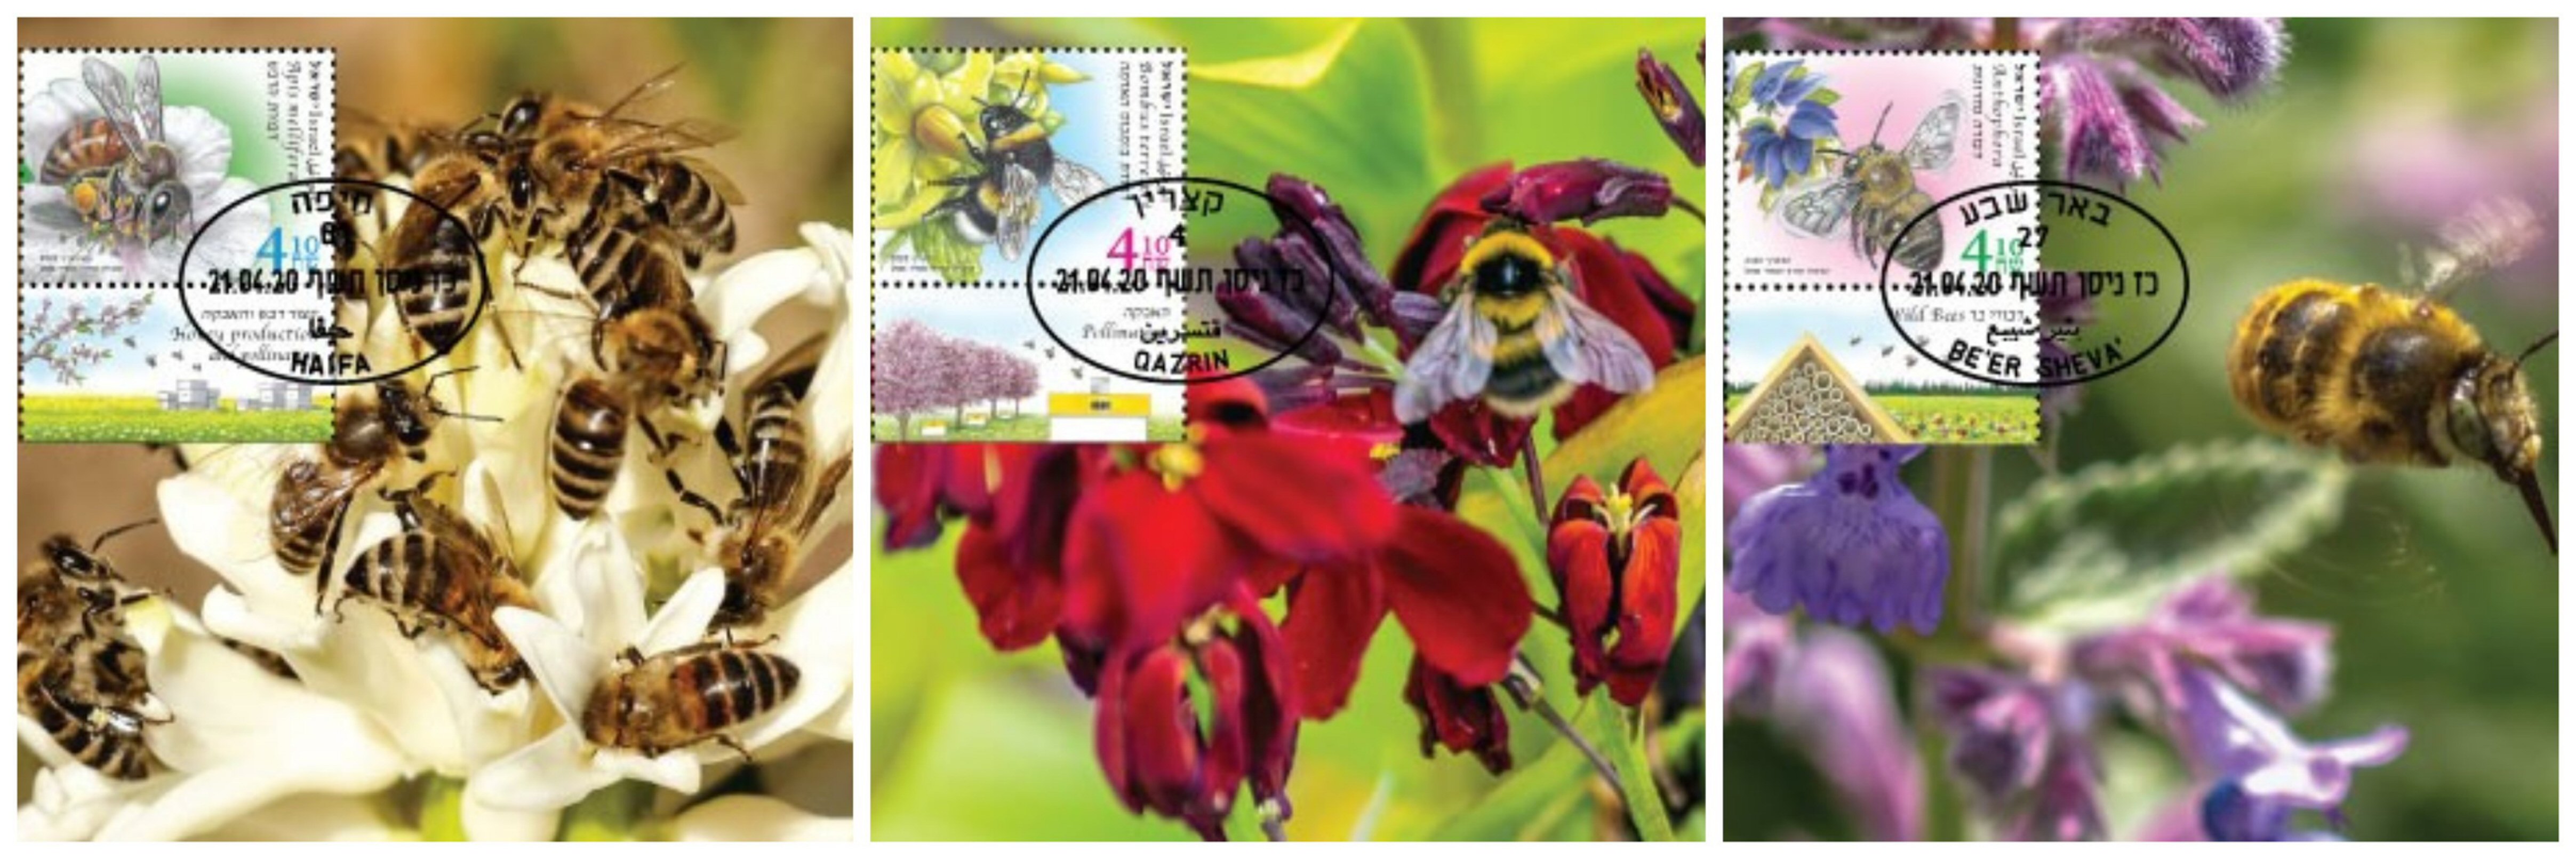 גלויות מירב דבורים בישראל